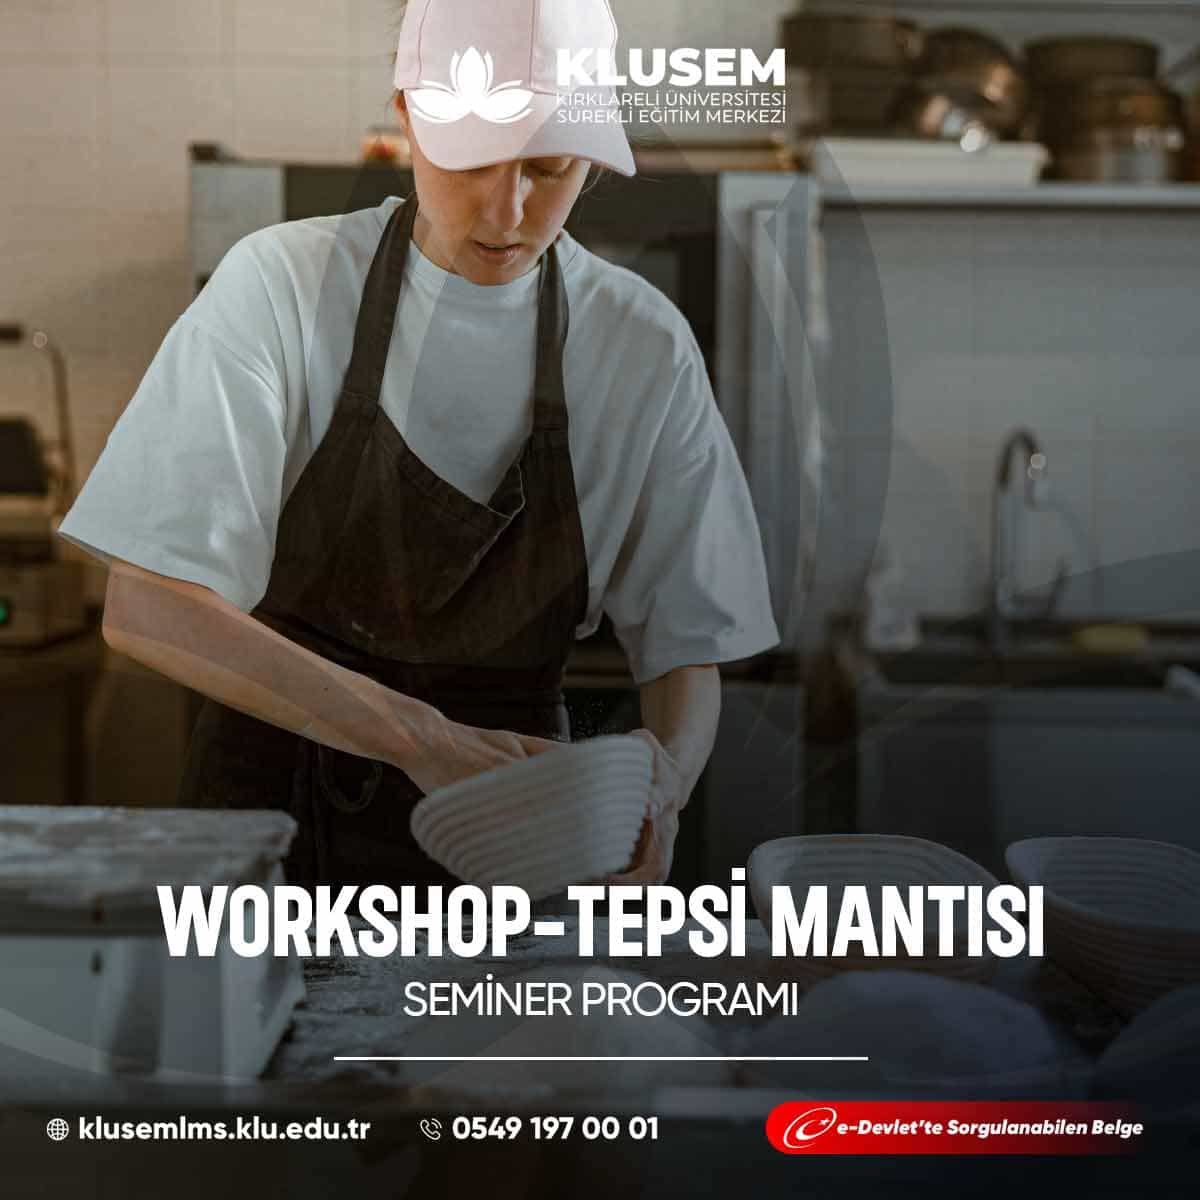 Tepsi mantısı workshopları, Türk mutfağının özel bir lezzeti olan tepsi mantısının yapımını öğrenme fırsatı sunar.